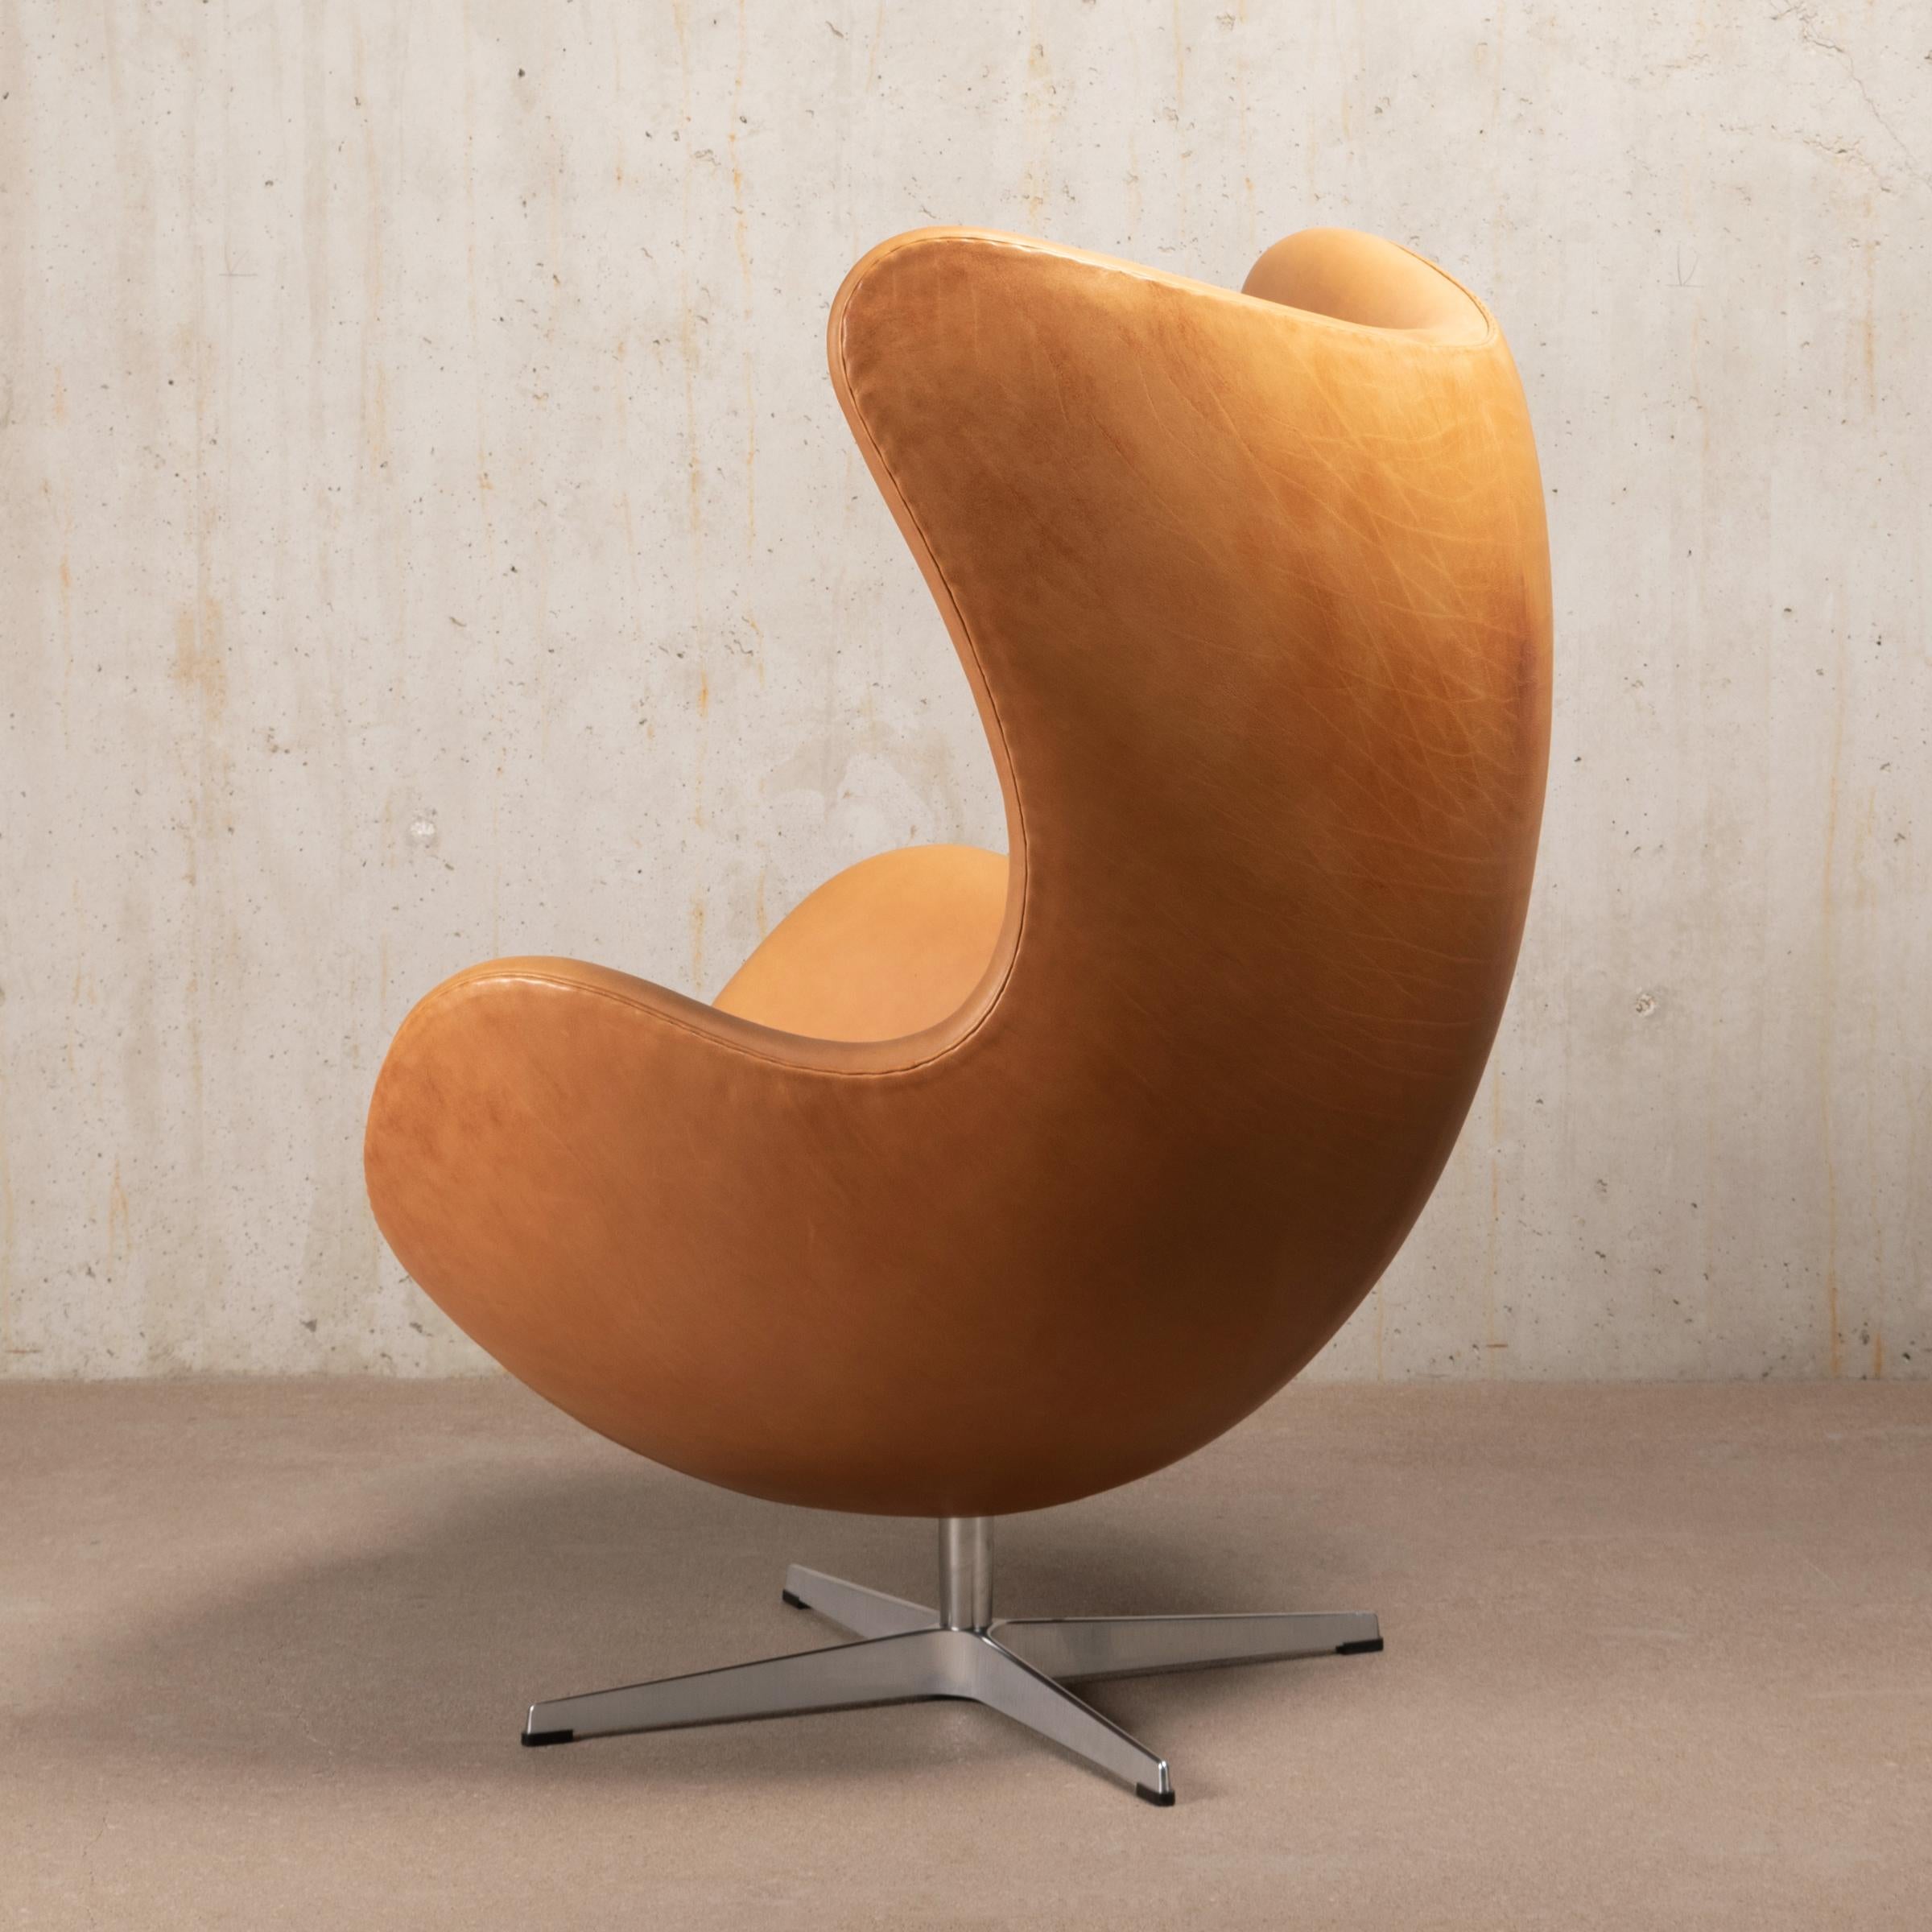 Scandinavian Modern Arne Jacobsen Egg Chair in Patined Walnut Grace Leather by Fitz Hansen, Denmark